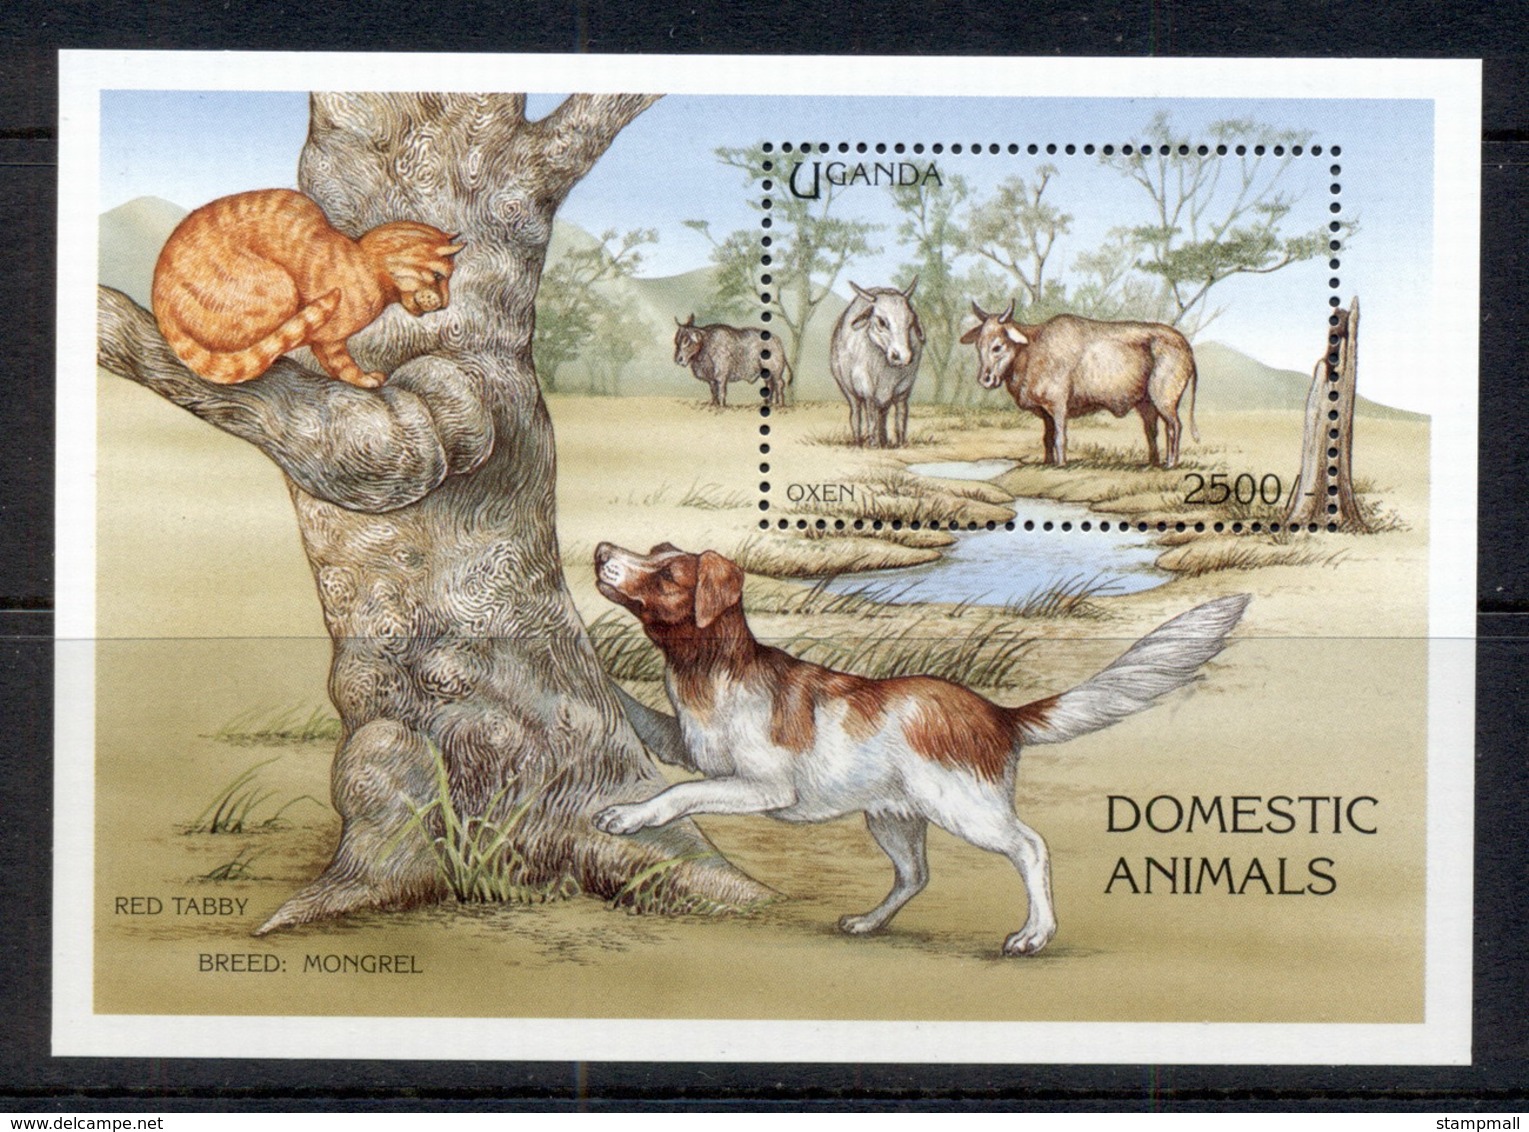 Uganda 1995 Domestic Animals, Cats & Dogs, Oxen MS MUH - Uganda (1962-...)